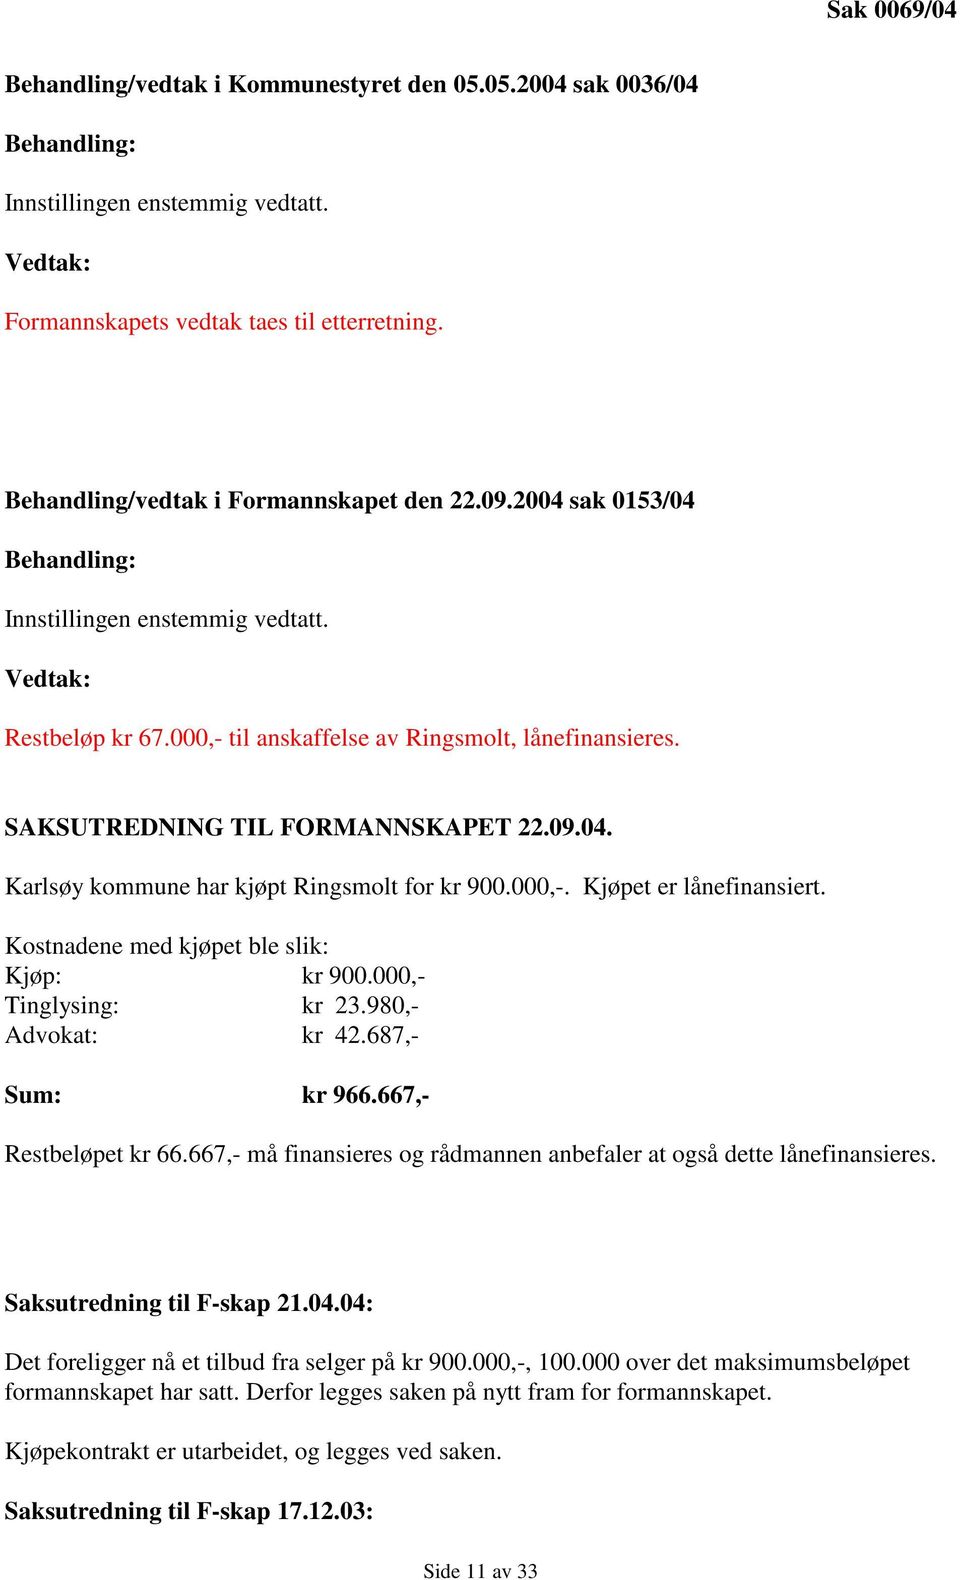 SAKSUTREDNING TIL FORMANNSKAPET 22.09.04. Karlsøy kommune har kjøpt Ringsmolt for kr 900.000,-. Kjøpet er lånefinansiert. Kostnadene med kjøpet ble slik: Kjøp: kr 900.000,- Tinglysing: kr 23.